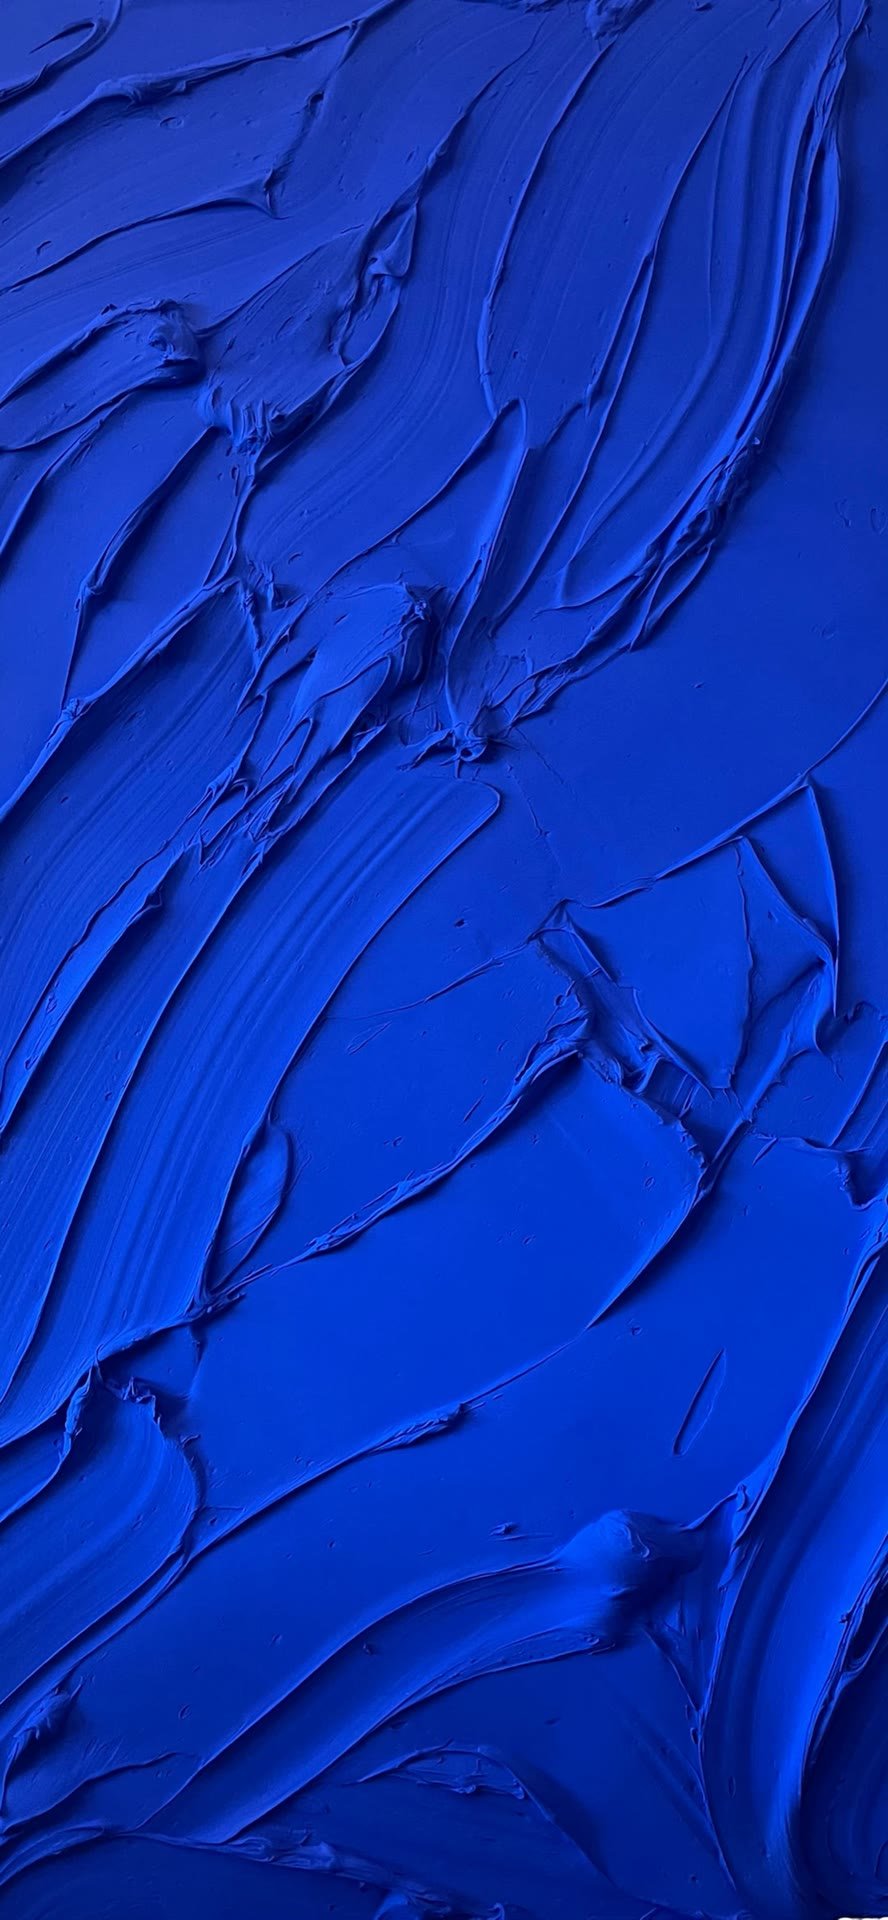 克莱因蓝超清壁纸图片